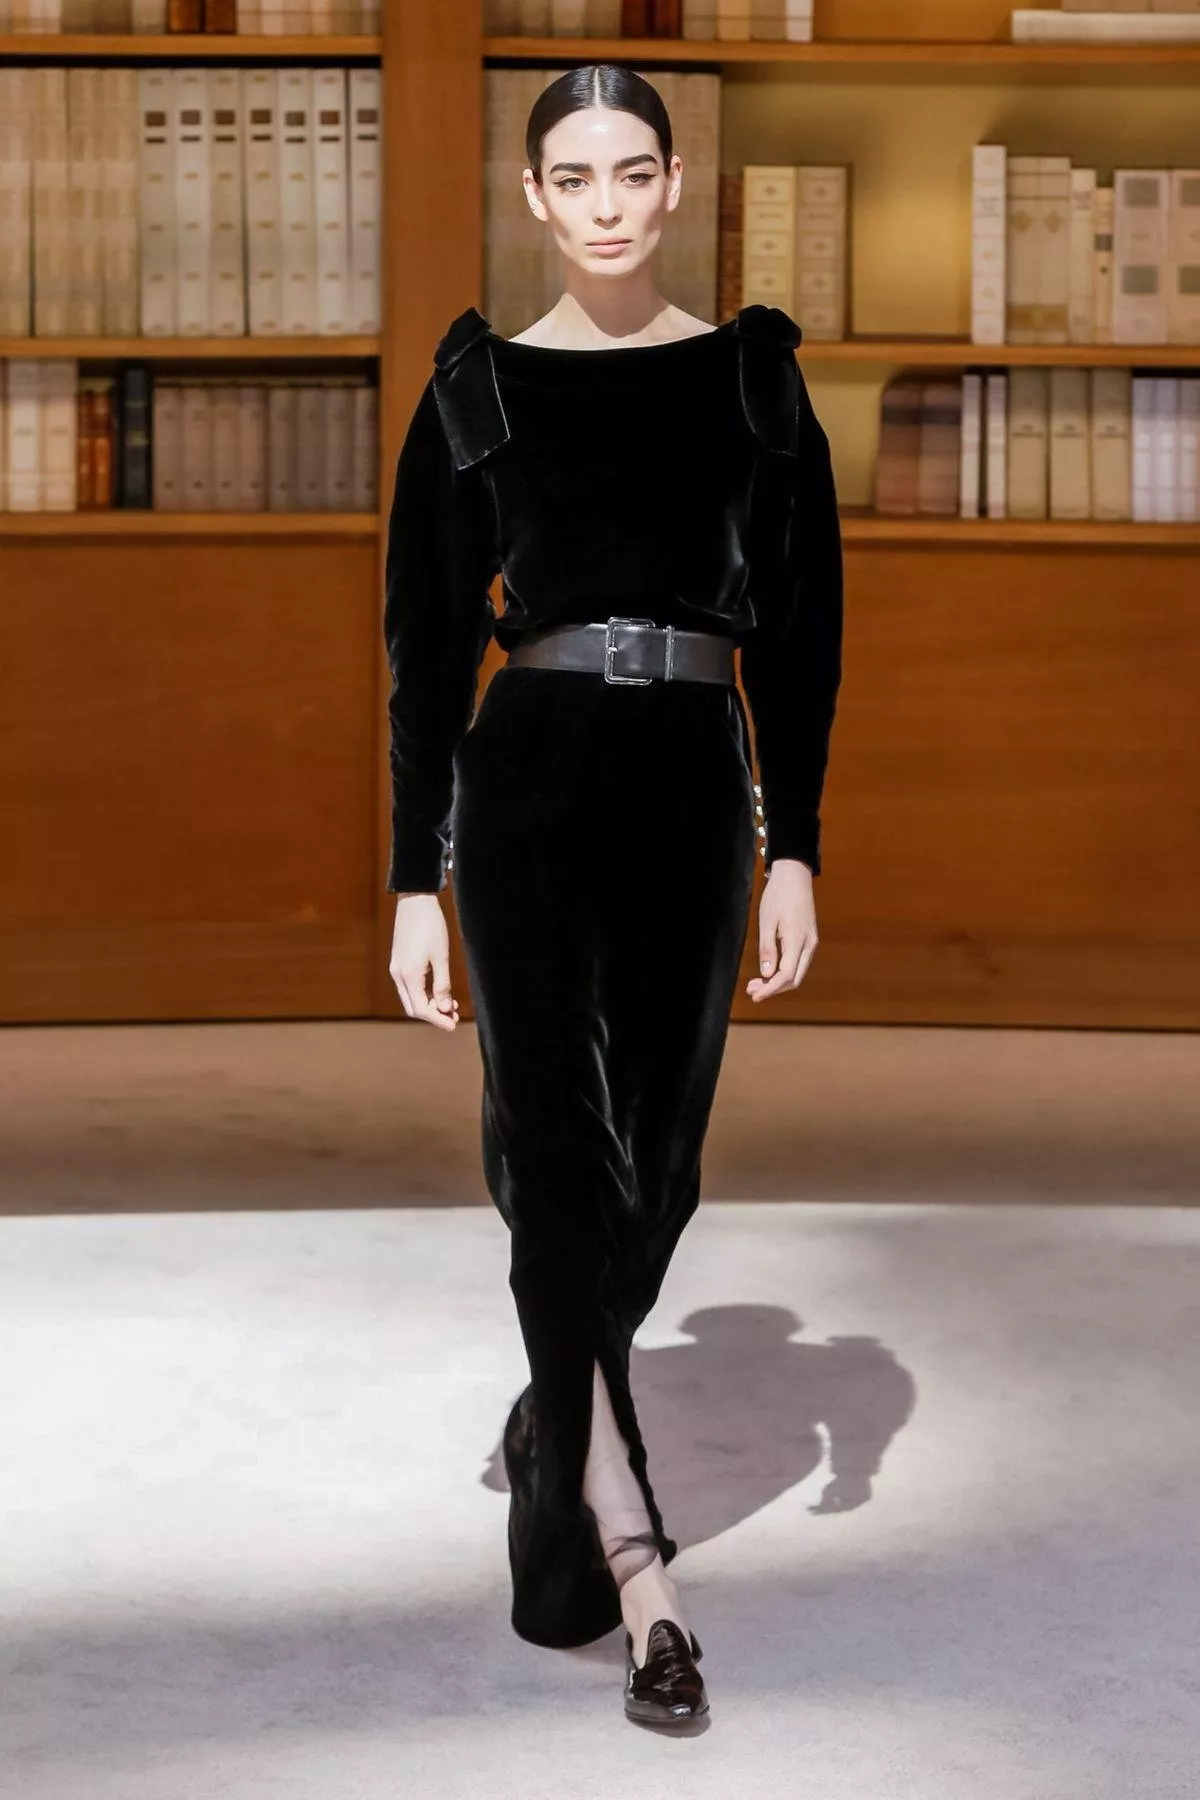 مجموعة Chanel للخياطة الراقية لخريف 2019: الطابع الشبابي يسيطر بخفّة وأنوثة منكّهاً بلمسة الدار الأيقونية